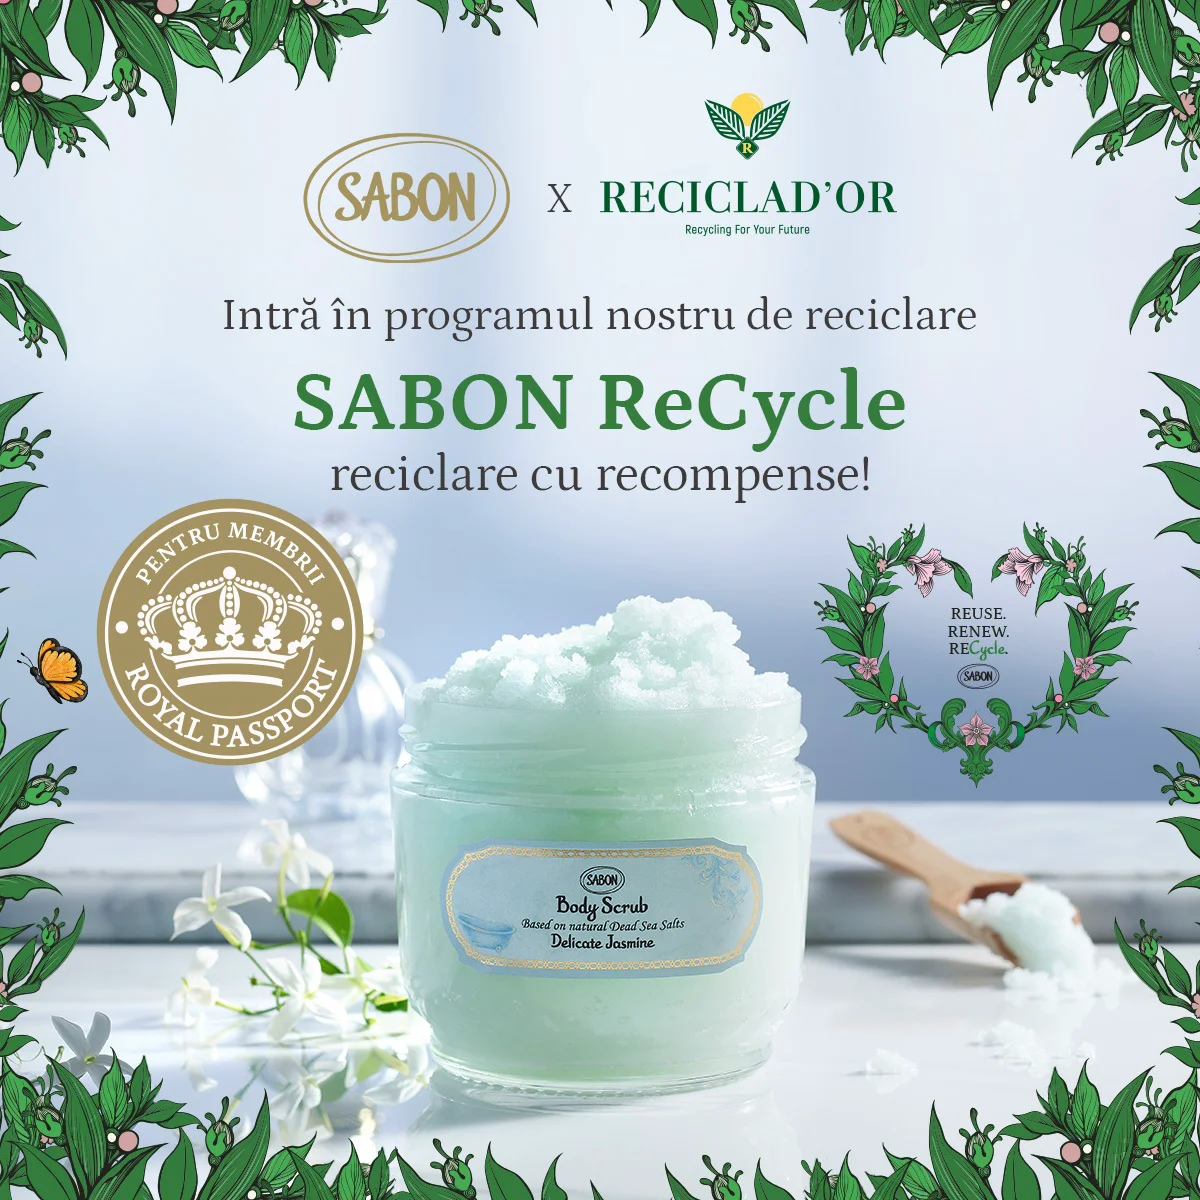 SABON ReCycle, în parteneriat cu RECICLAD'OR, intră în programul nostru de reciclare cu recompense